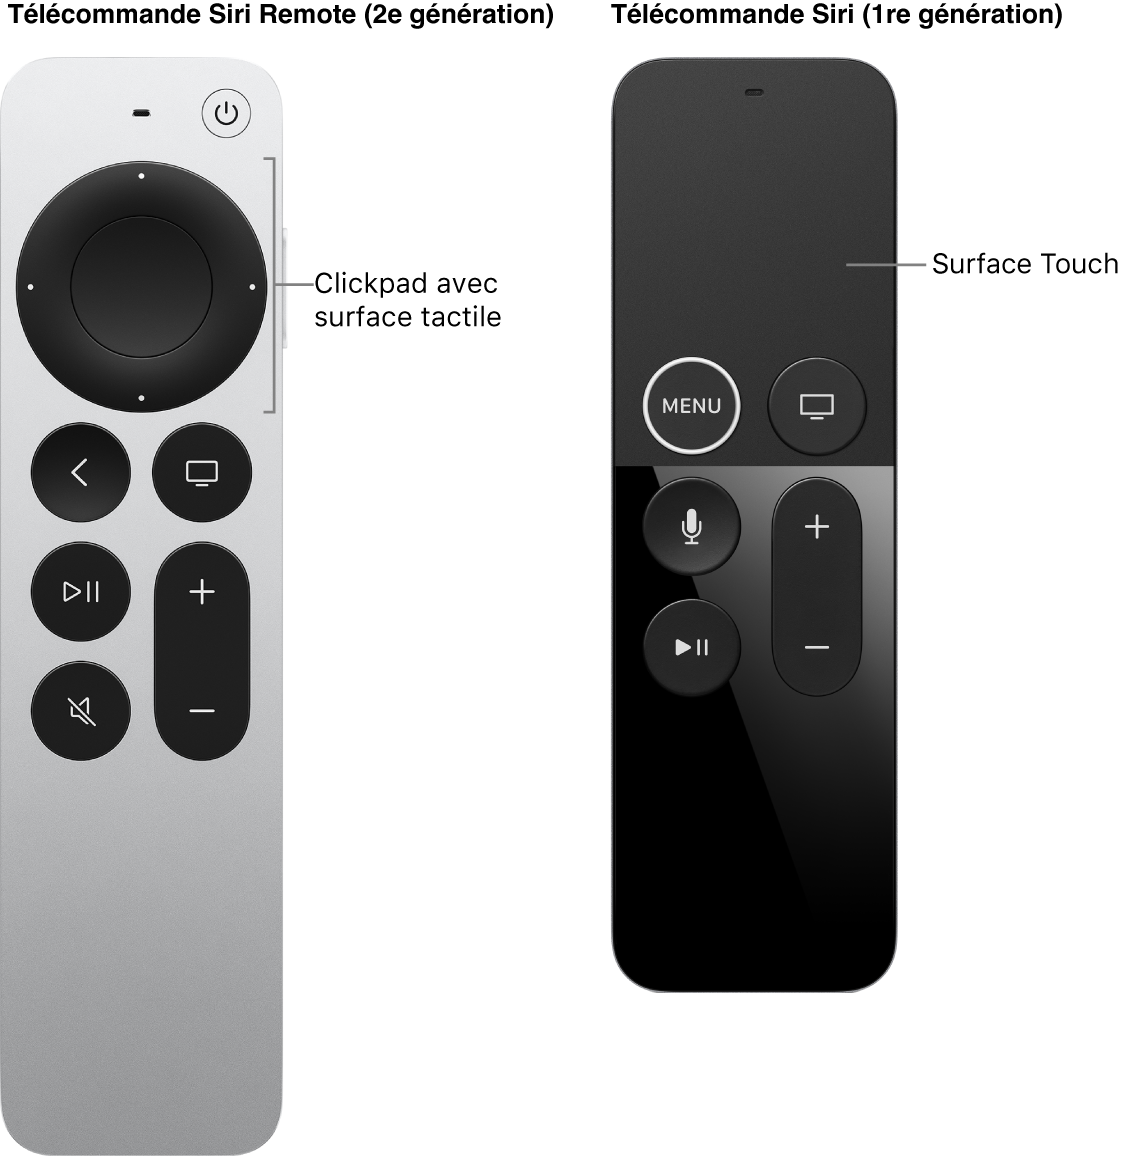 Télécommande Siri Remote (2e génération) avec un clickpad et télécommande Siri Remote (1re génération) avec une surface tactile